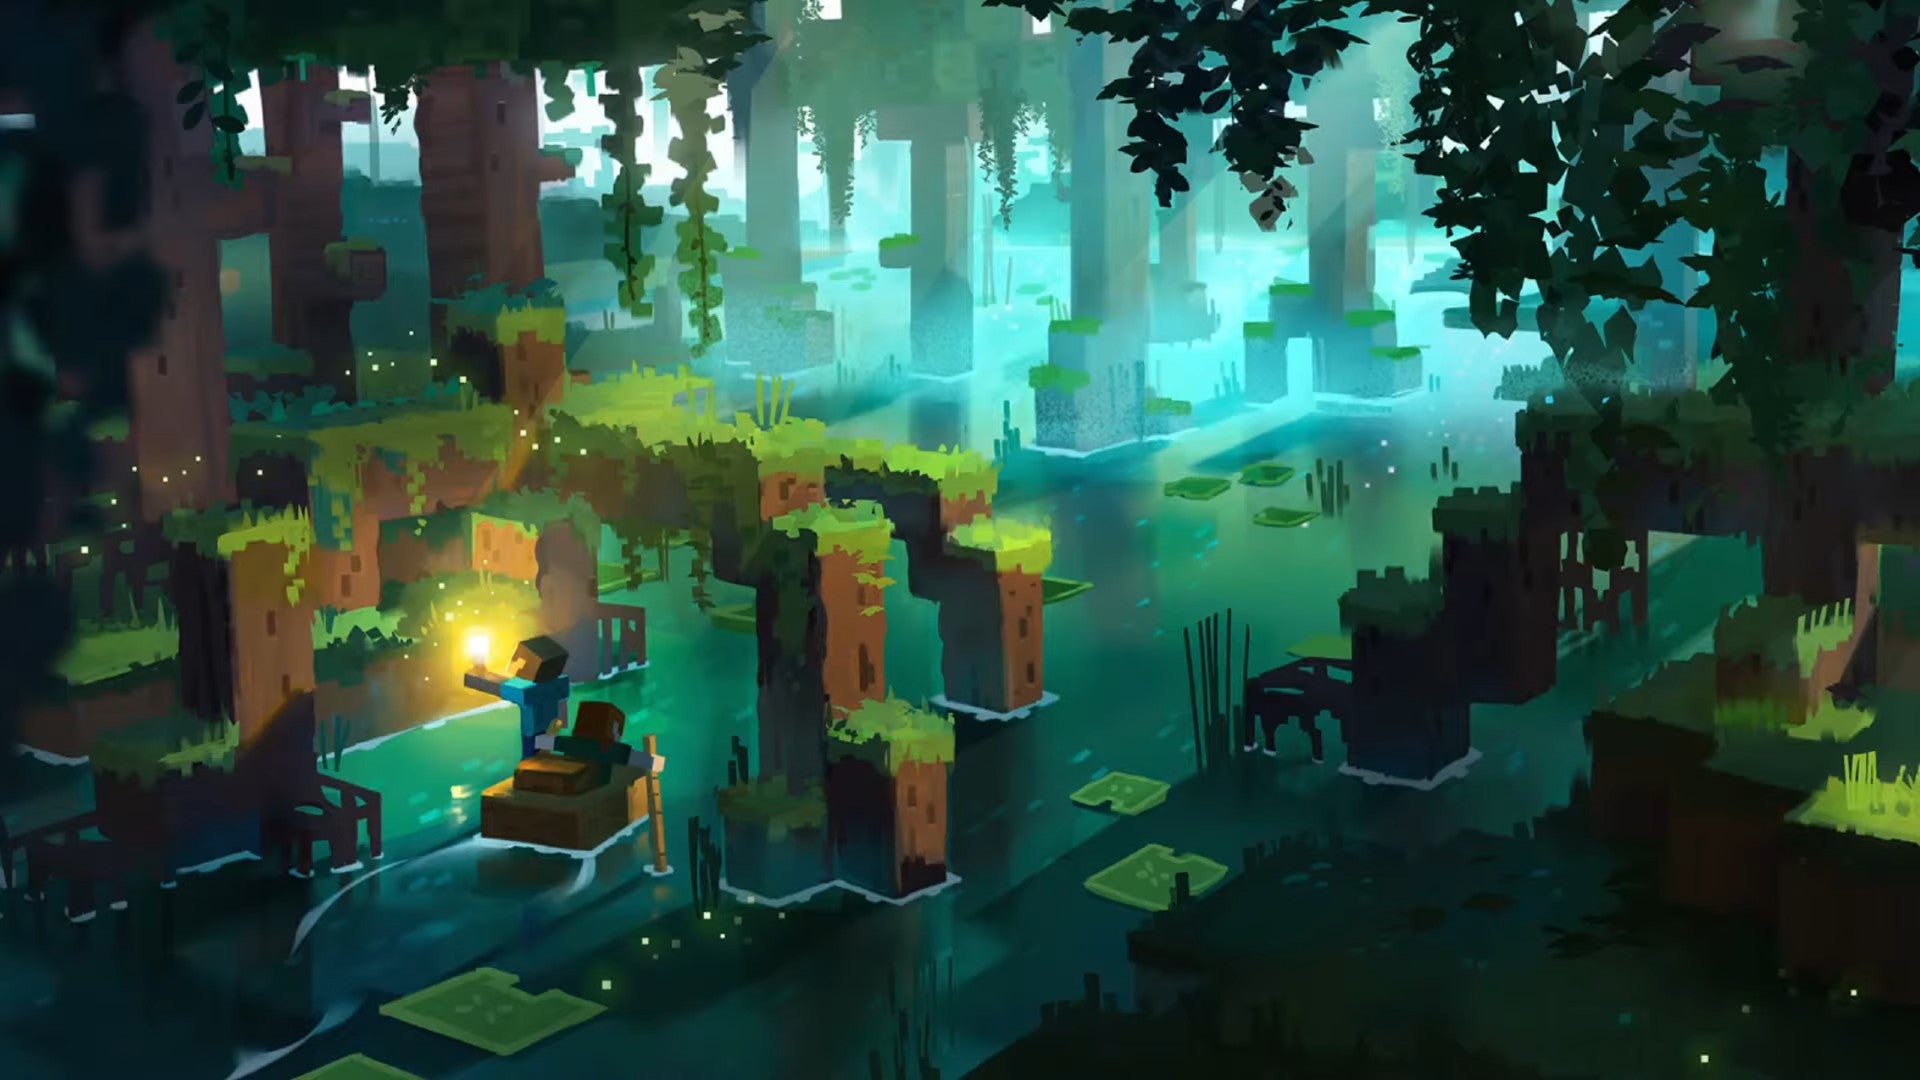 فن مفهوم الشخصيات وهم يجذبون قاربًا تحت جذور أشجار المانغروف في تحديث Minecraft The Wild